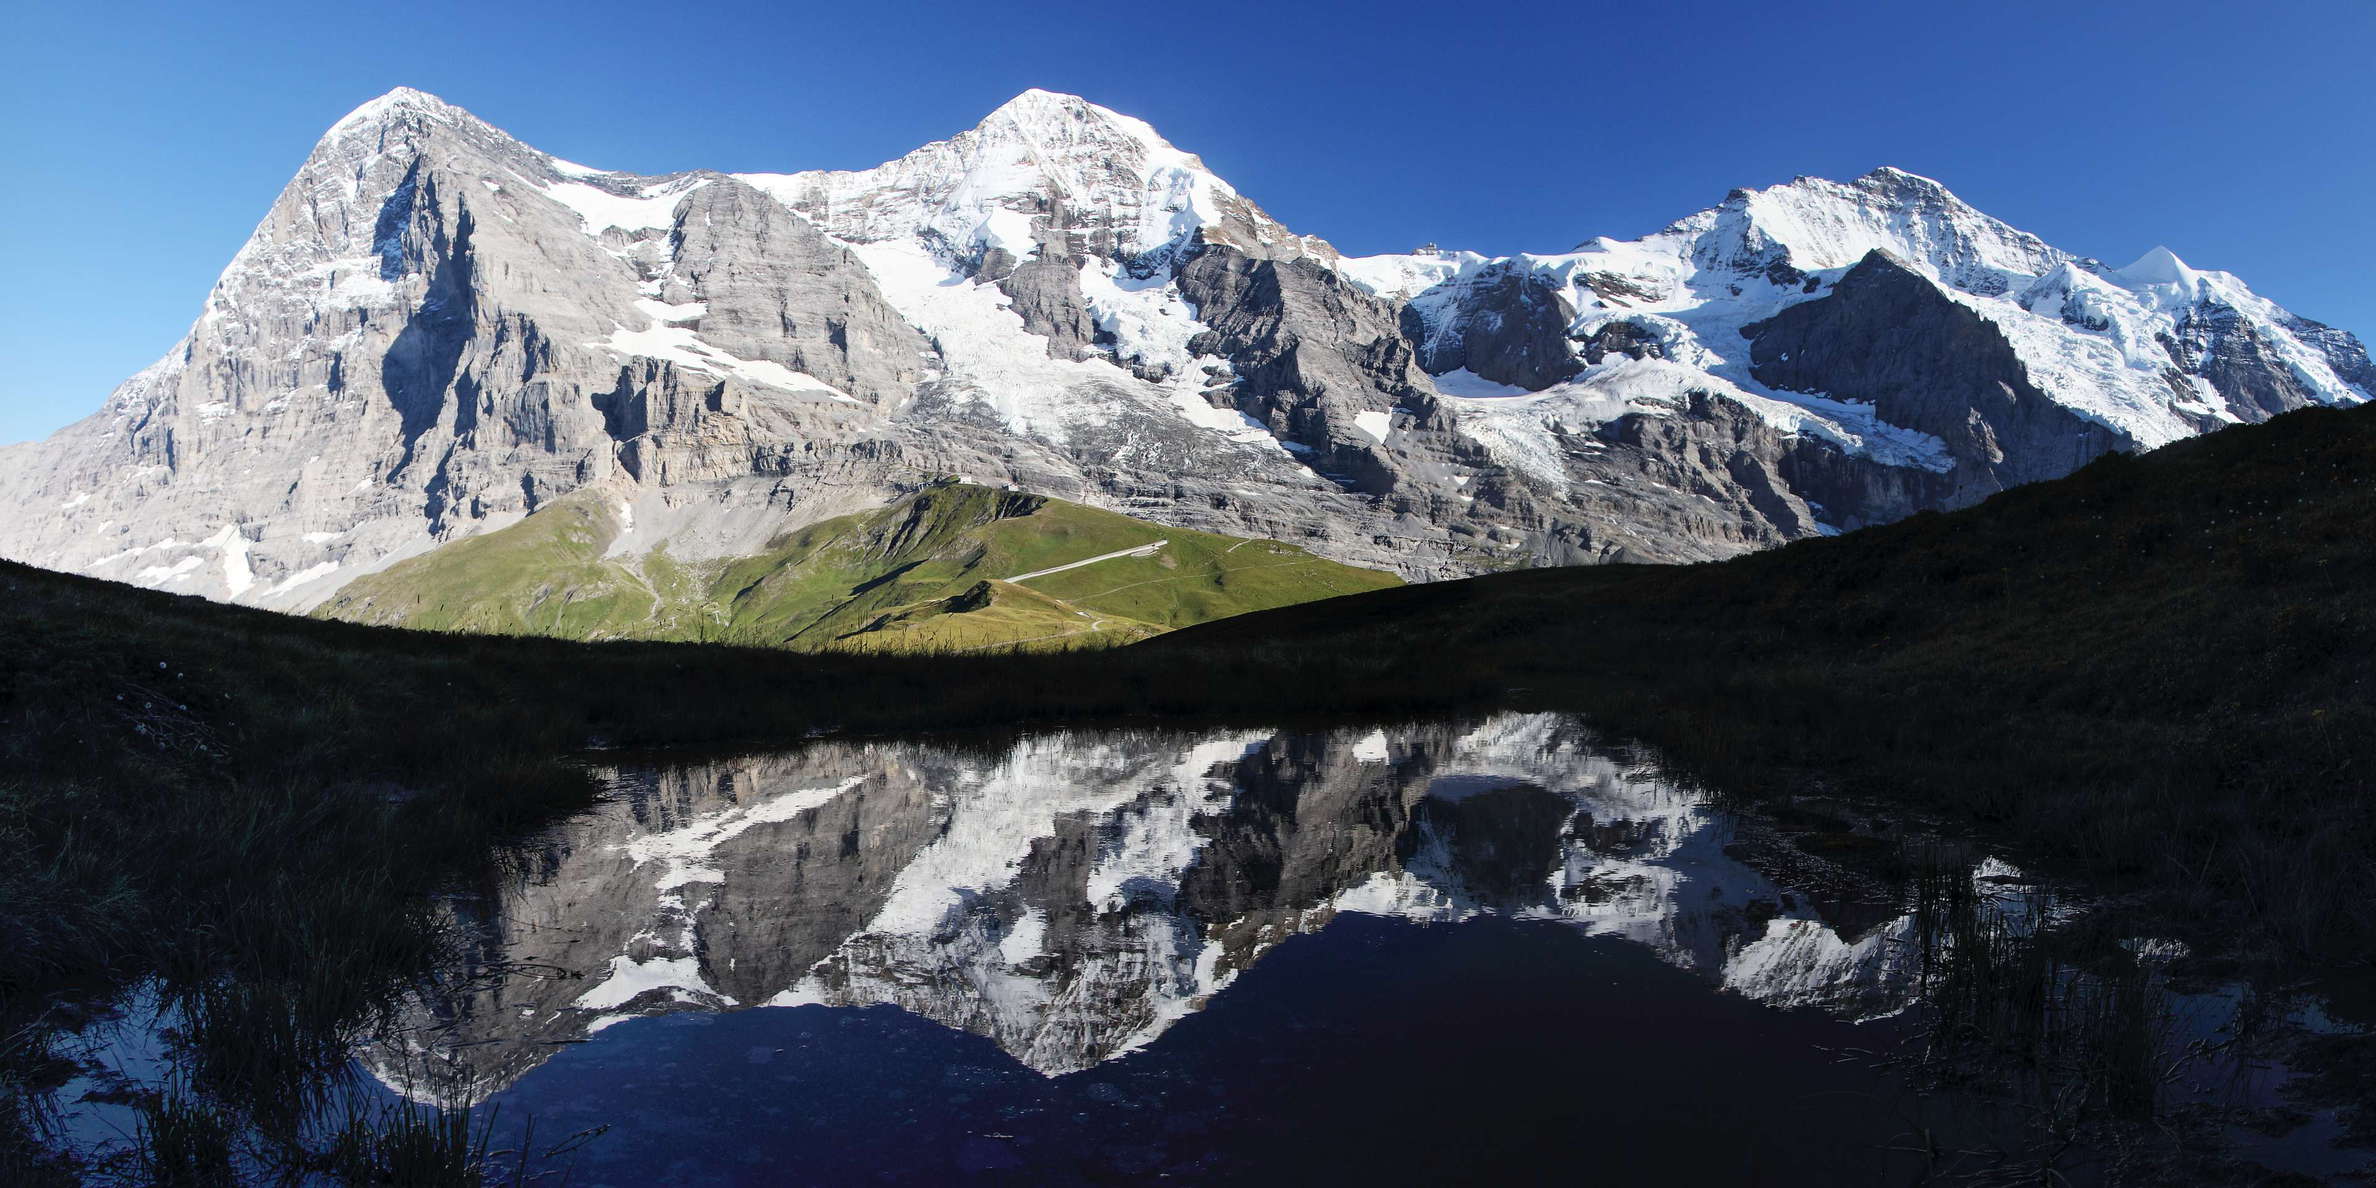 Eiger Mönch Jungfrau | Reflection